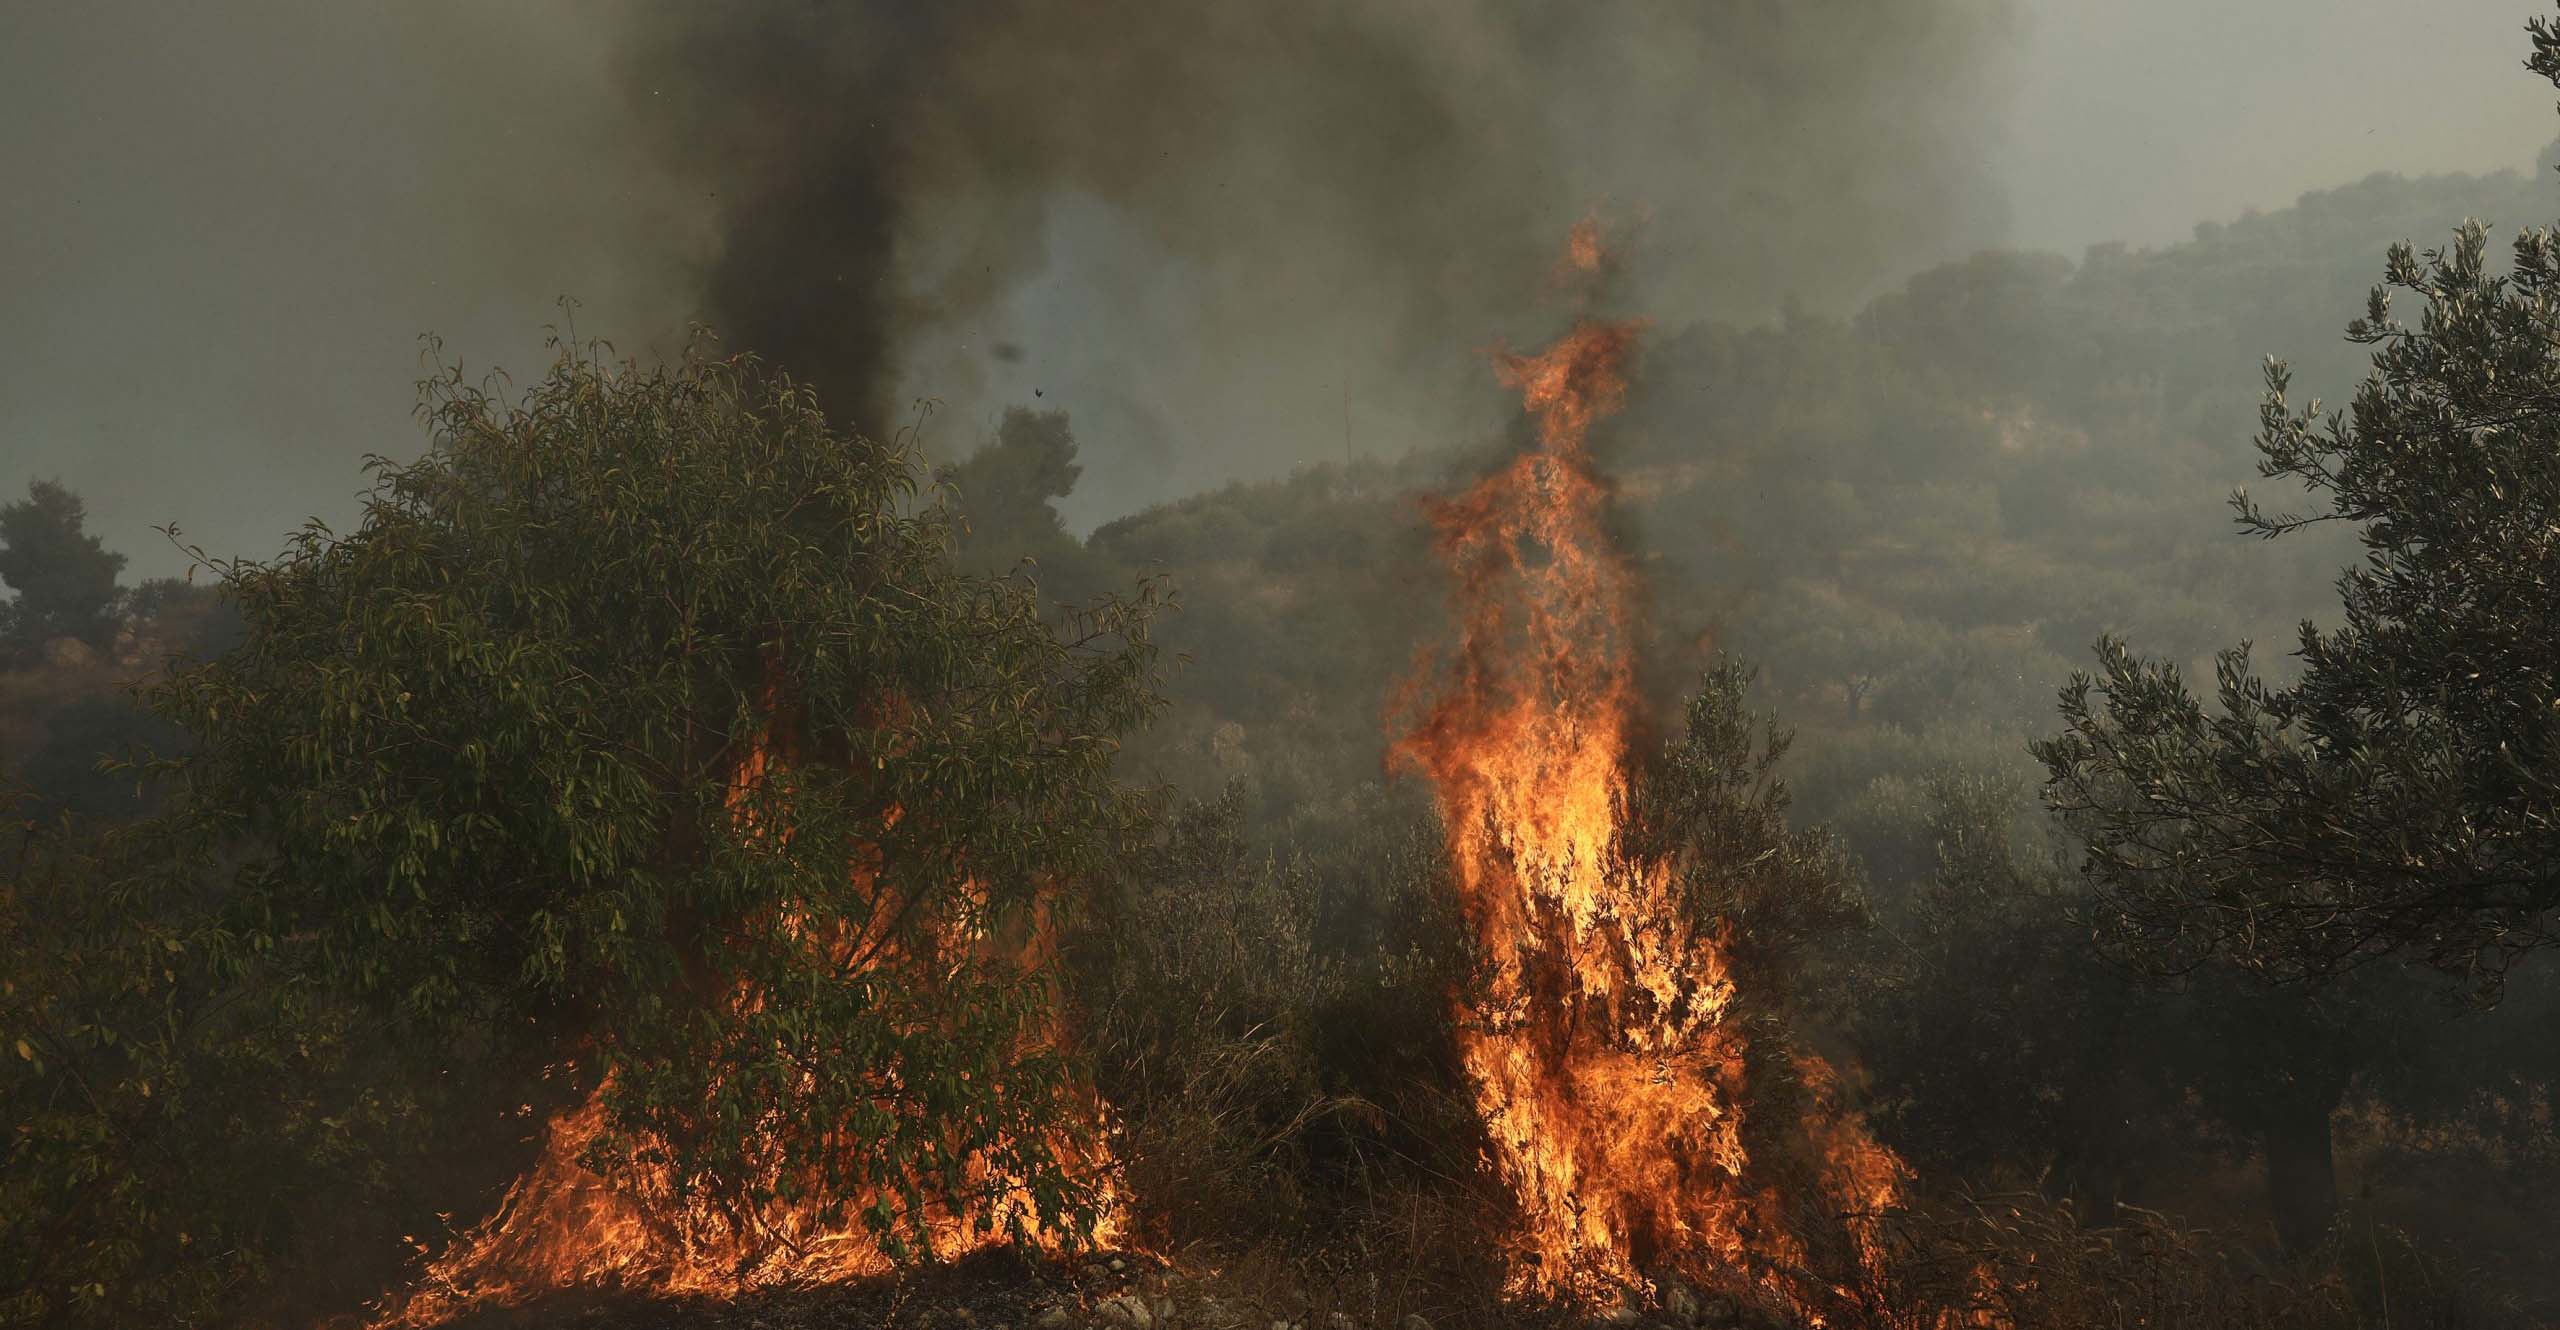 Διέταξε διοικητική έρευνα για τη φωτιά στο Κρατικό Δάσος Λεμεσού η Μαρία Παναγιώτου - Πληροφορίες για ανθρώπινο λάθος με φωτοβολίδα